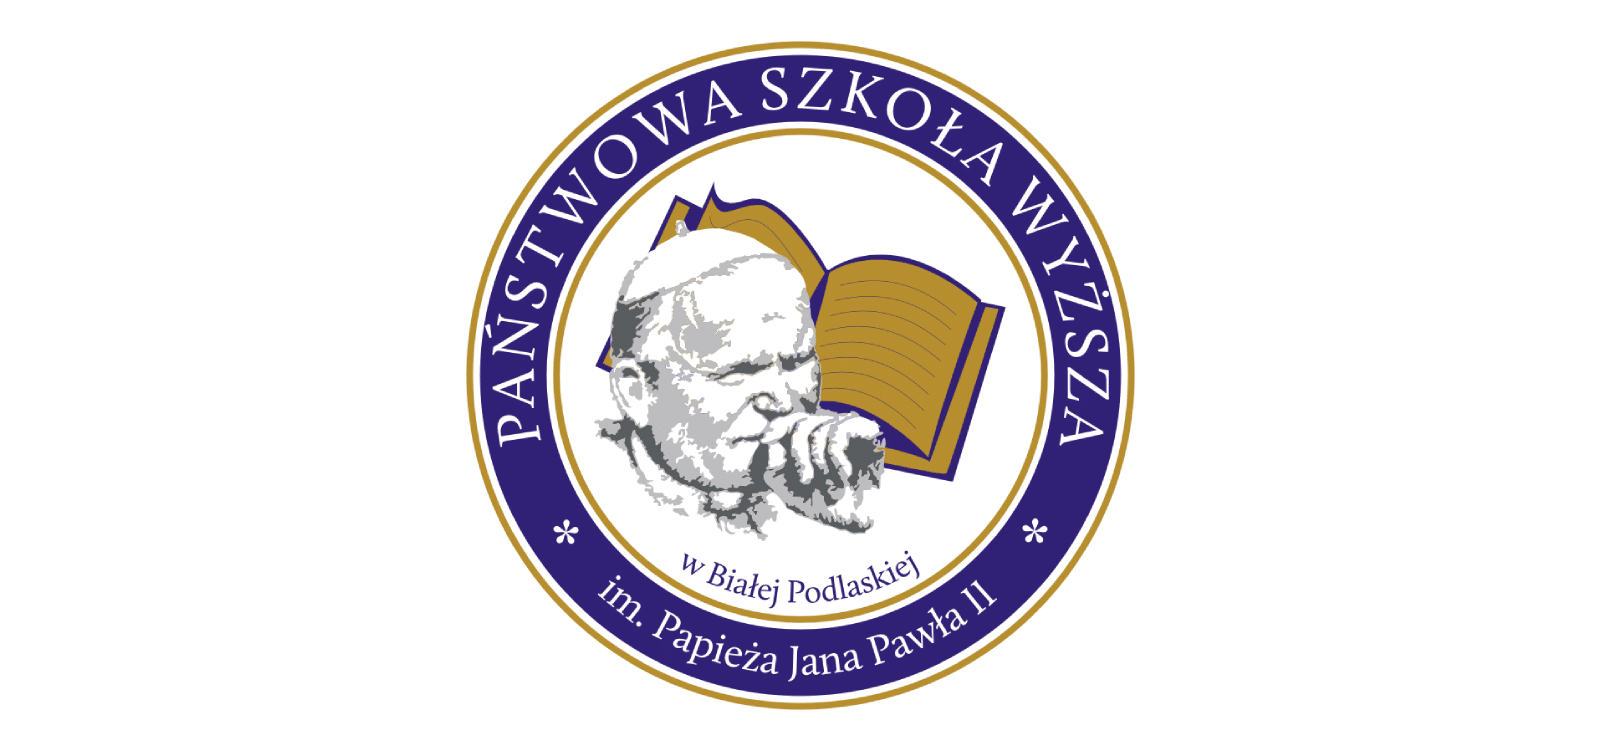 Państwowa Szkoła Wyższa im. Papieża Jana Pawła II w Białej Podlaskiej logo